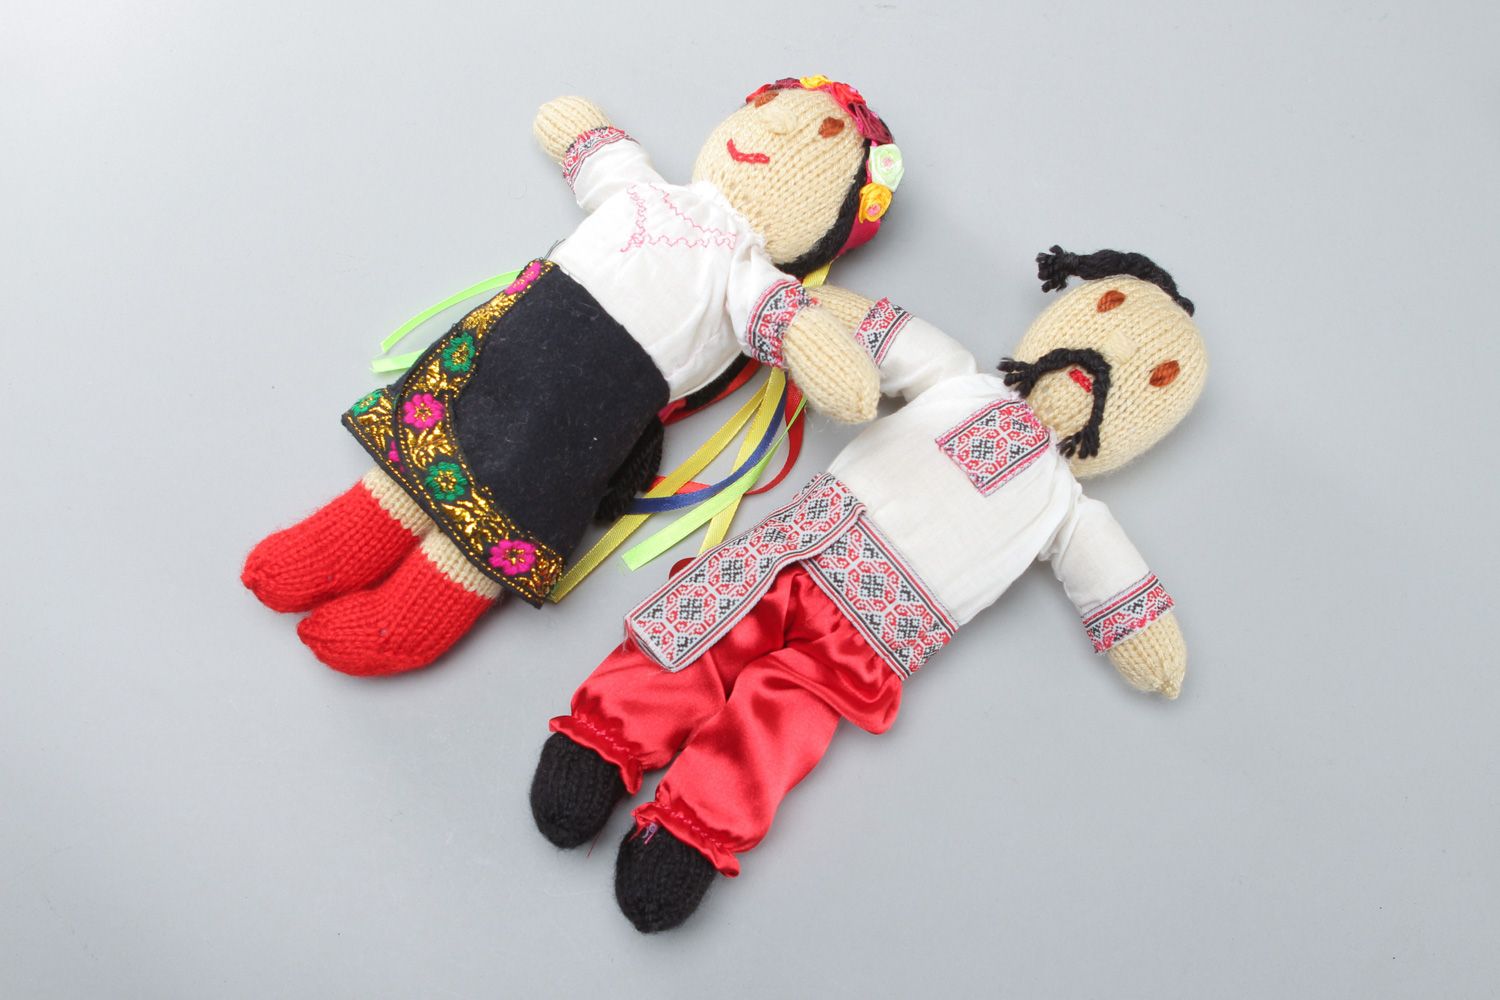 Куклы в национальных костюмах вязаные спицами набор 2 штуки для детей и взрослых  фото 1